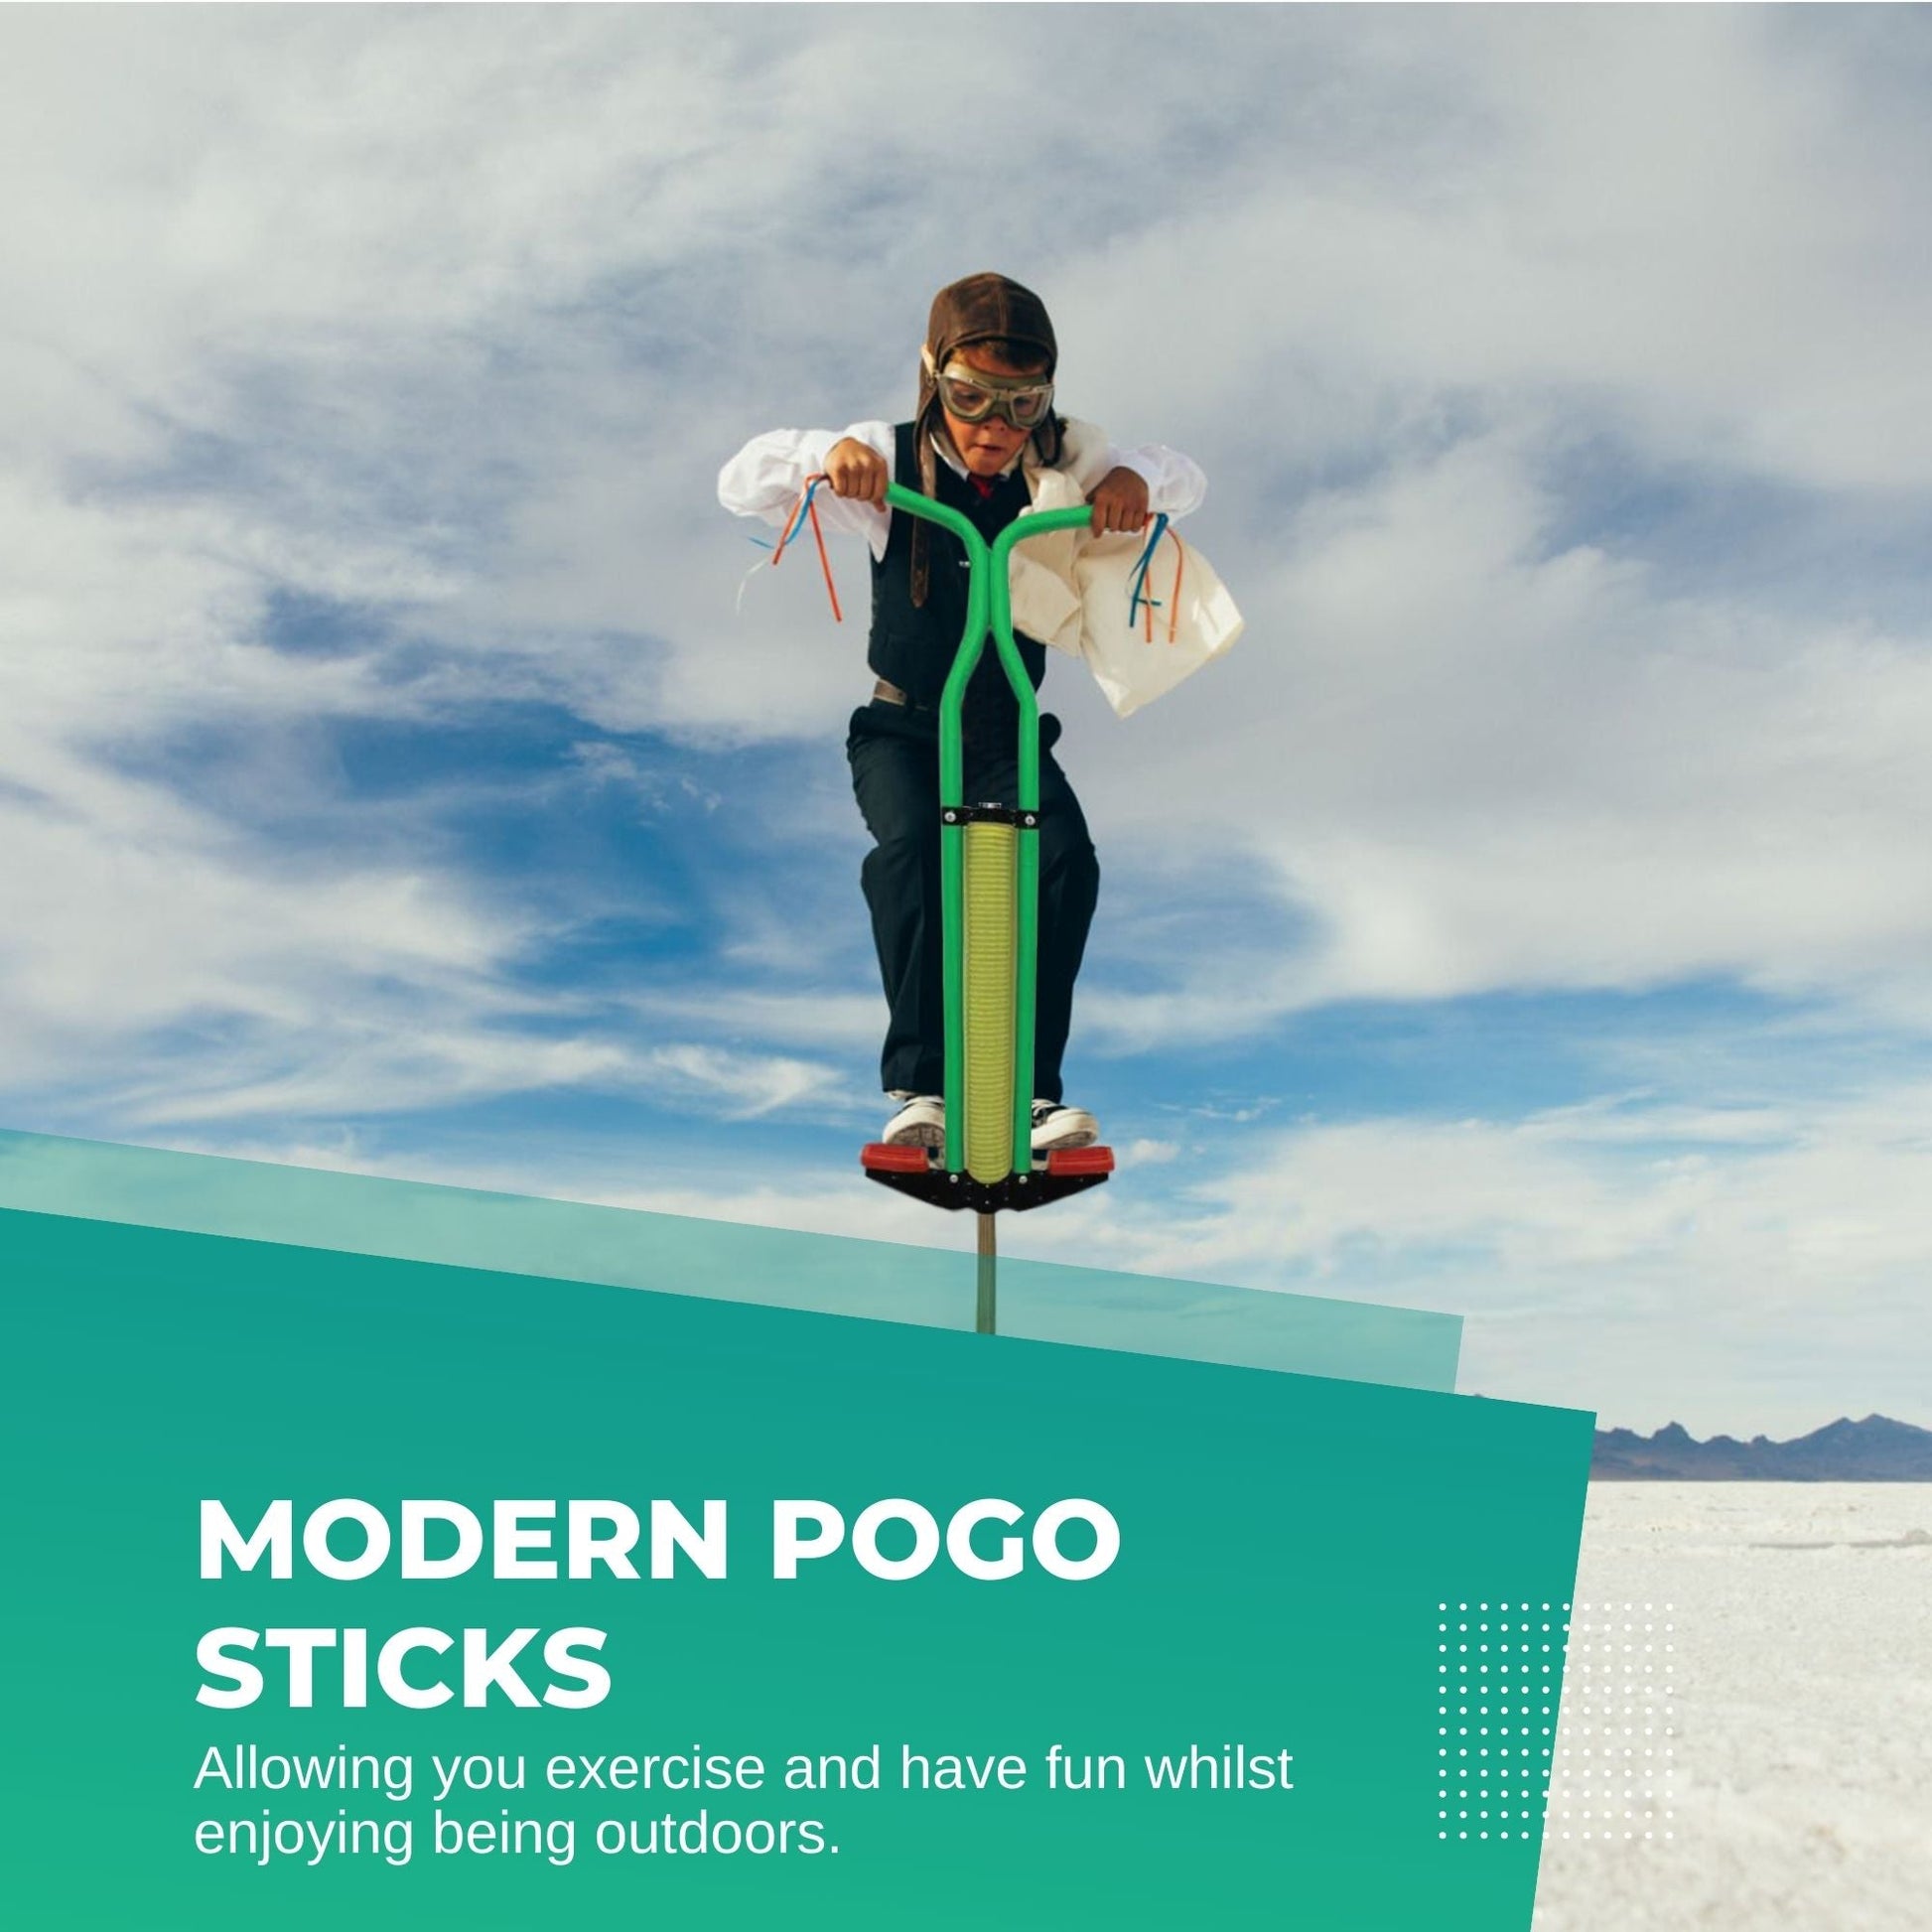 Green Pogo Stick Kids - Childrens Jumping Jackhammer Exercise Hopper Toy